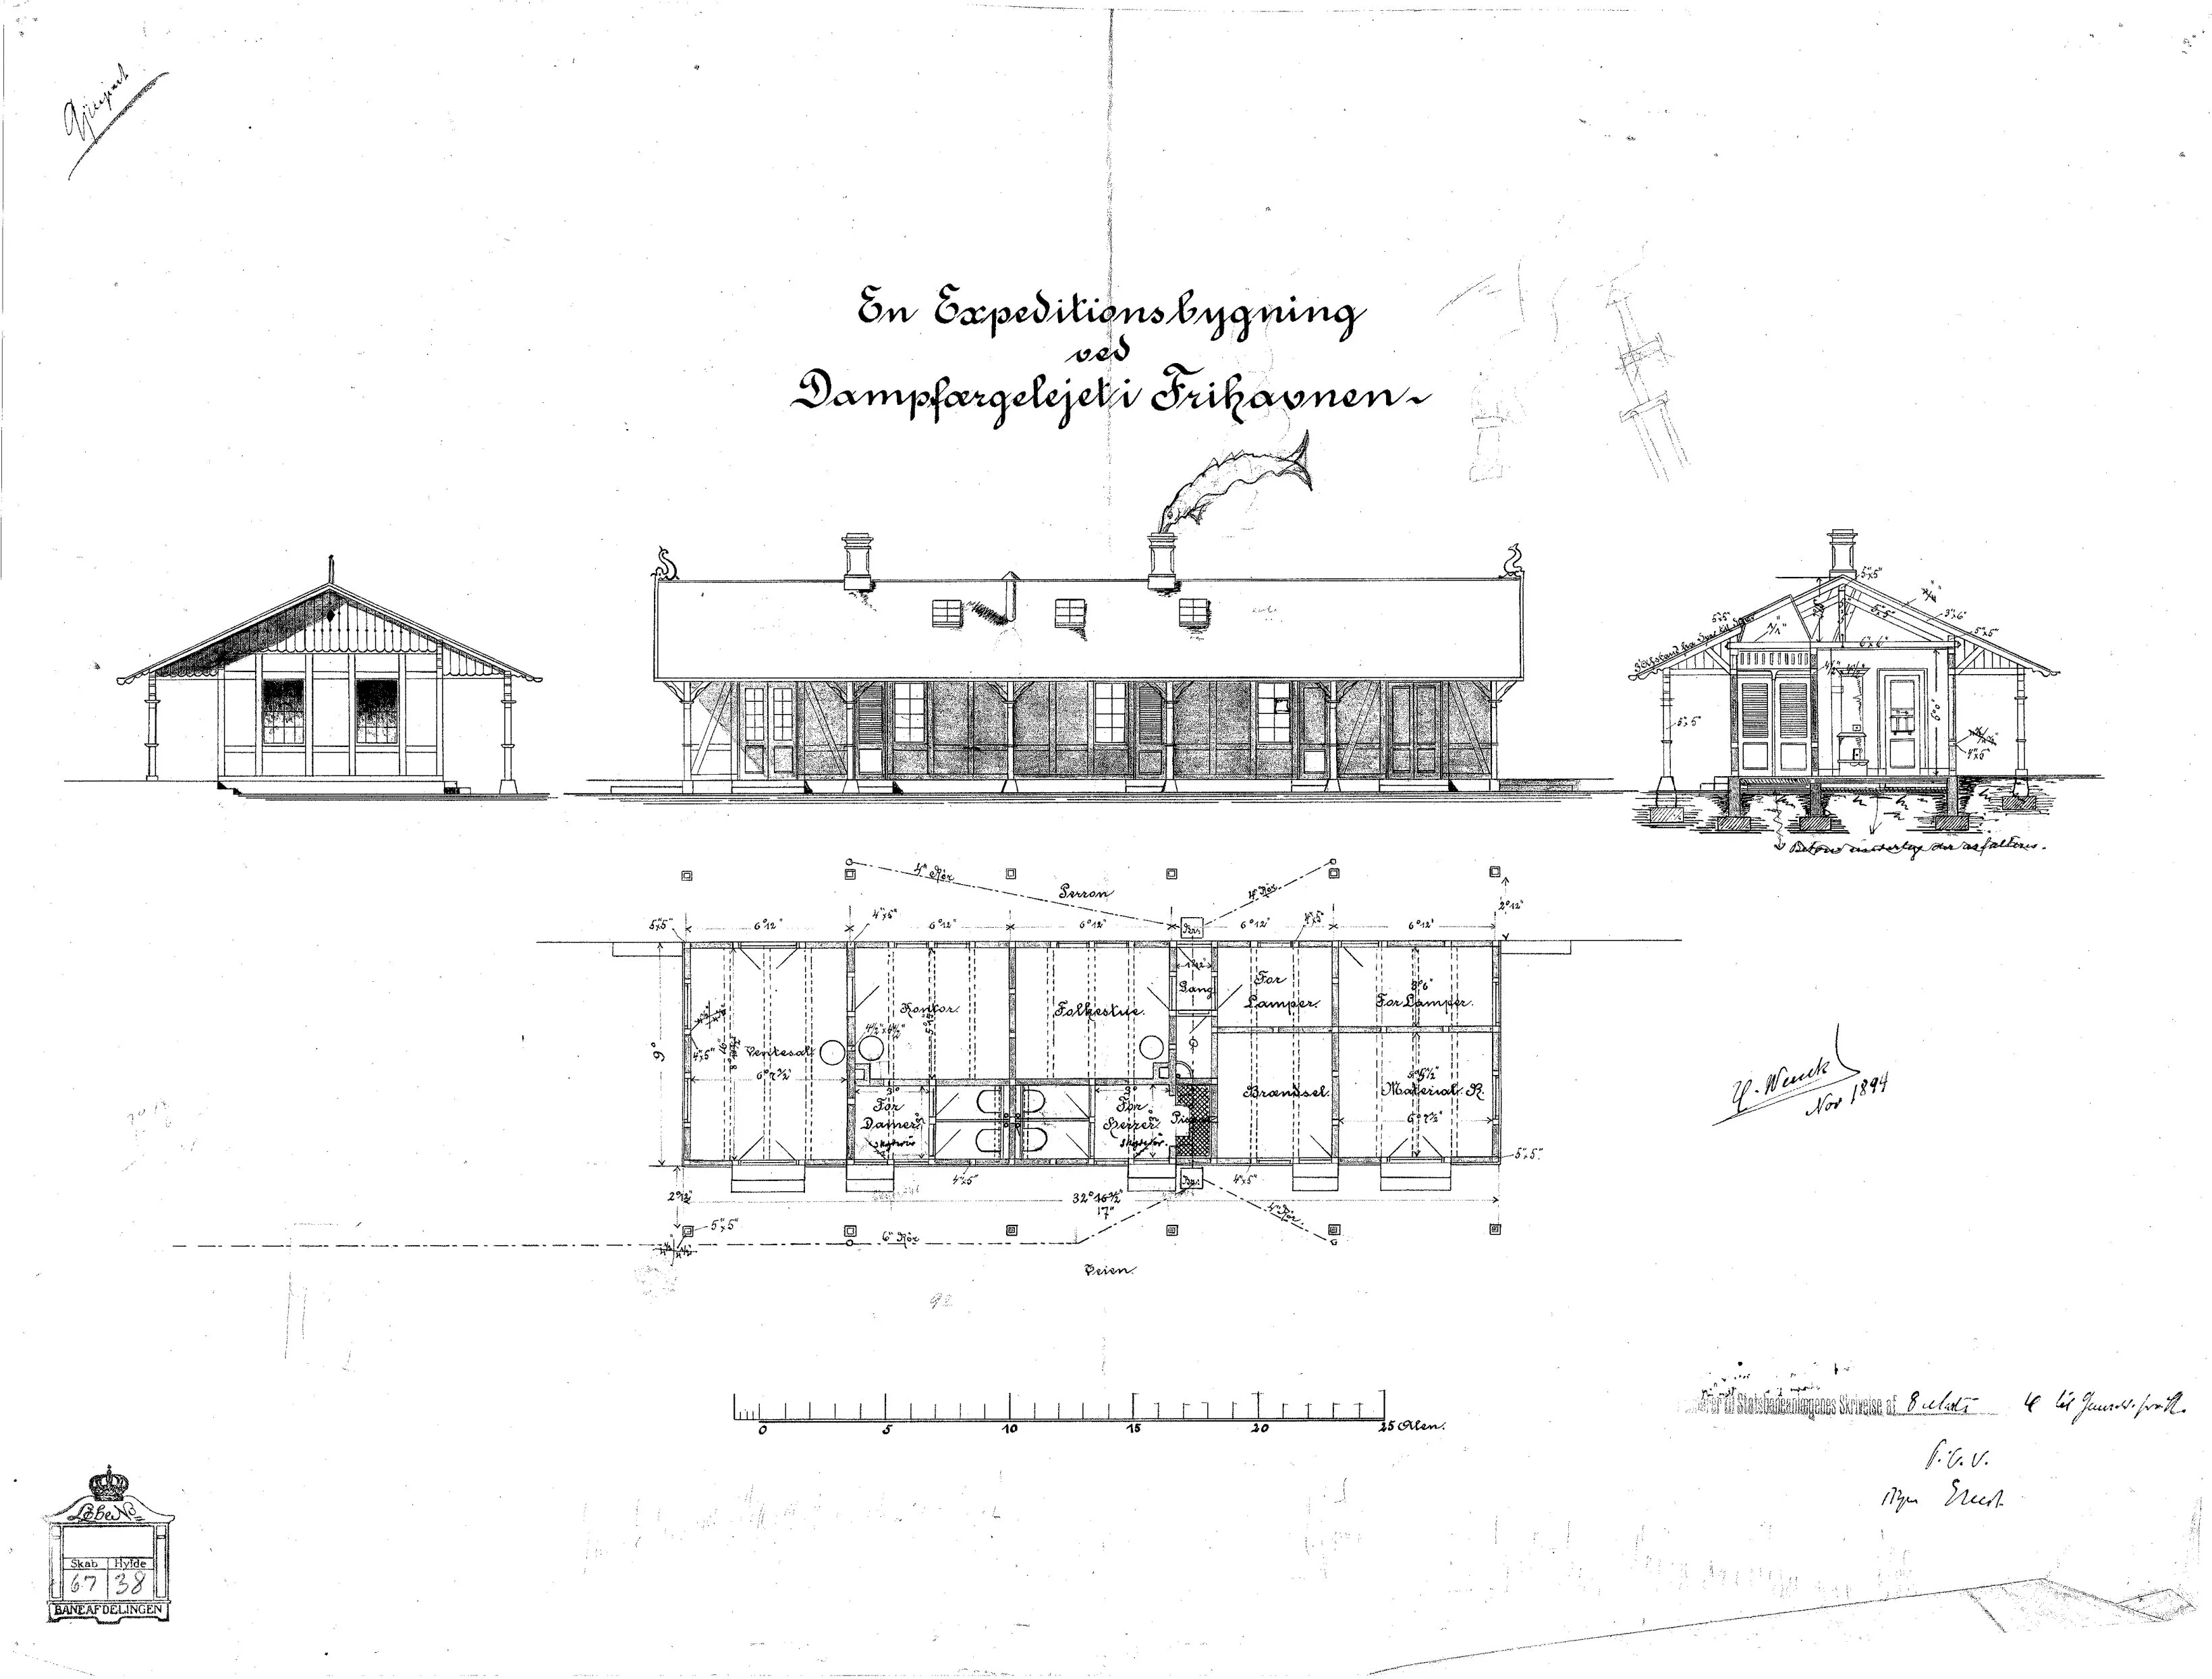 Tegning af Ekspeditionsbygning ved dampfærgelejet ved Frihavnens Station.